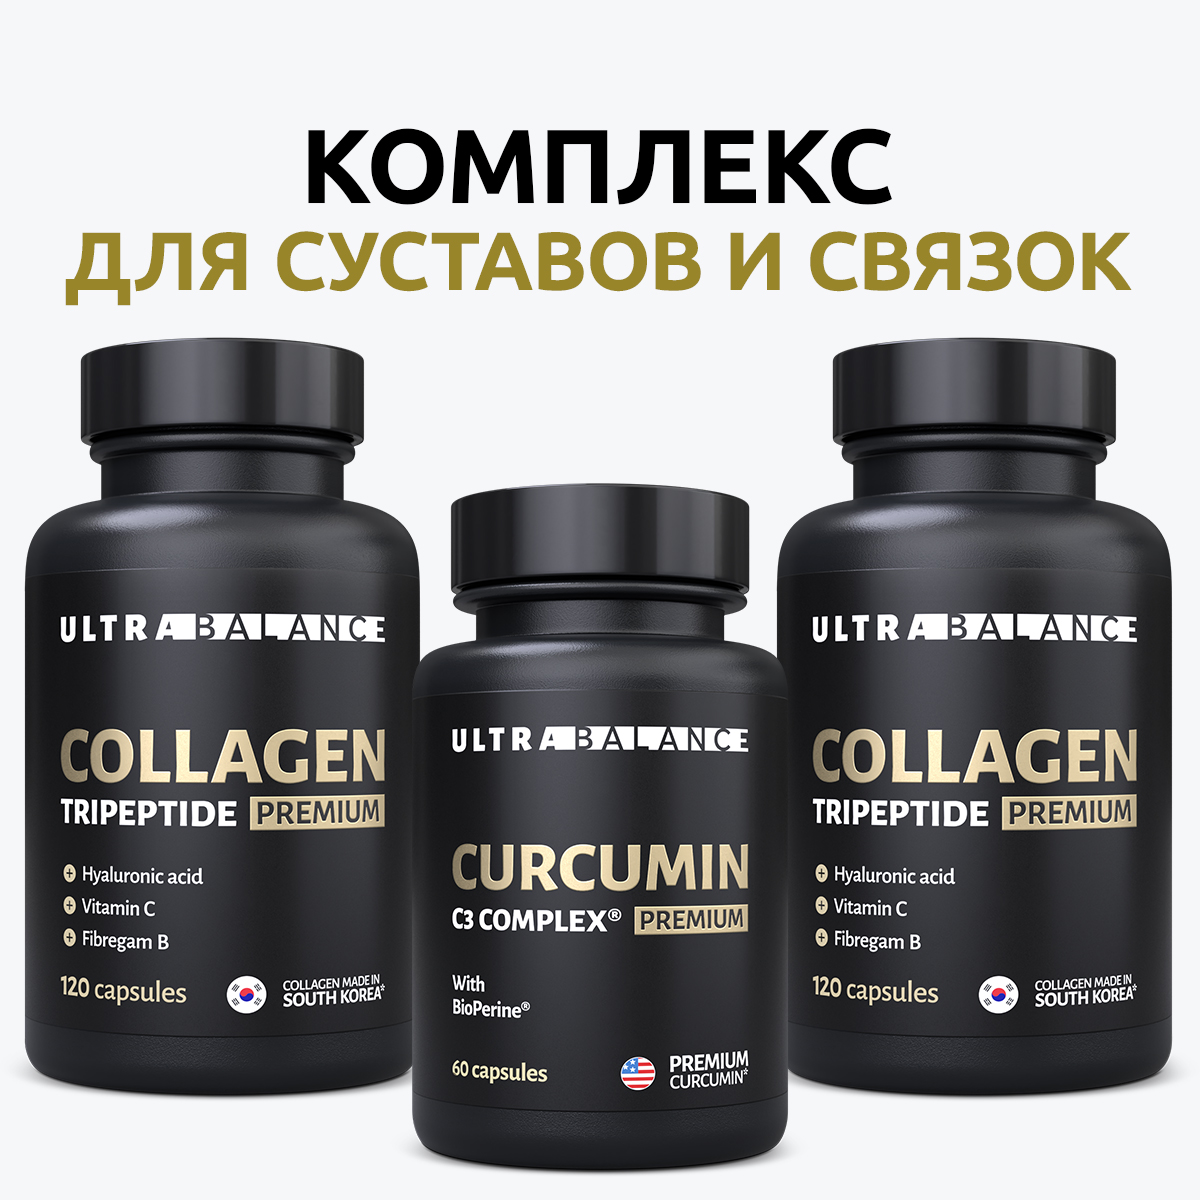 Морской коллаген для связок. Collagen-Premium витамин c. SPOCOLLA коллаген. Ultrabalance Collagen Tripeptide Premium капсулы отзывы. Collagen-Premium витамин с Telegram.